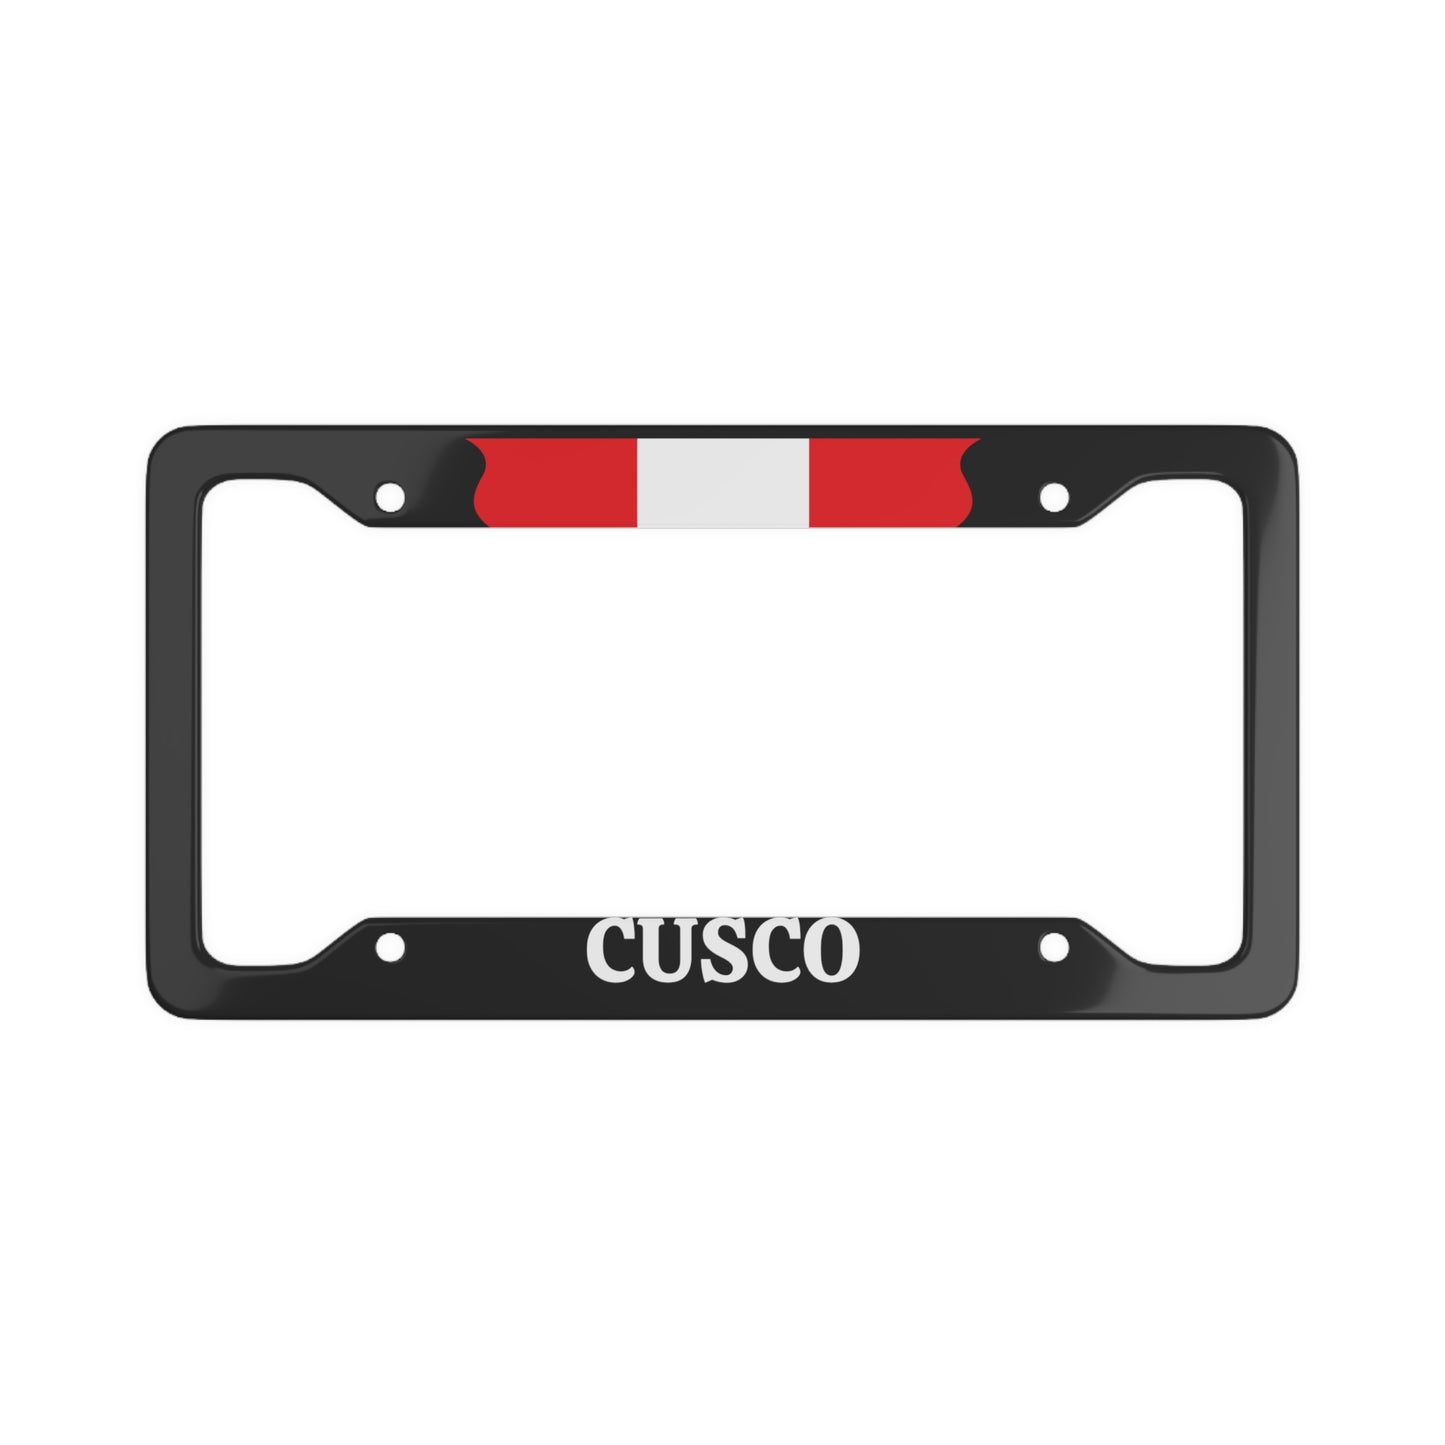 Cusco, Peru Car Plate Frame